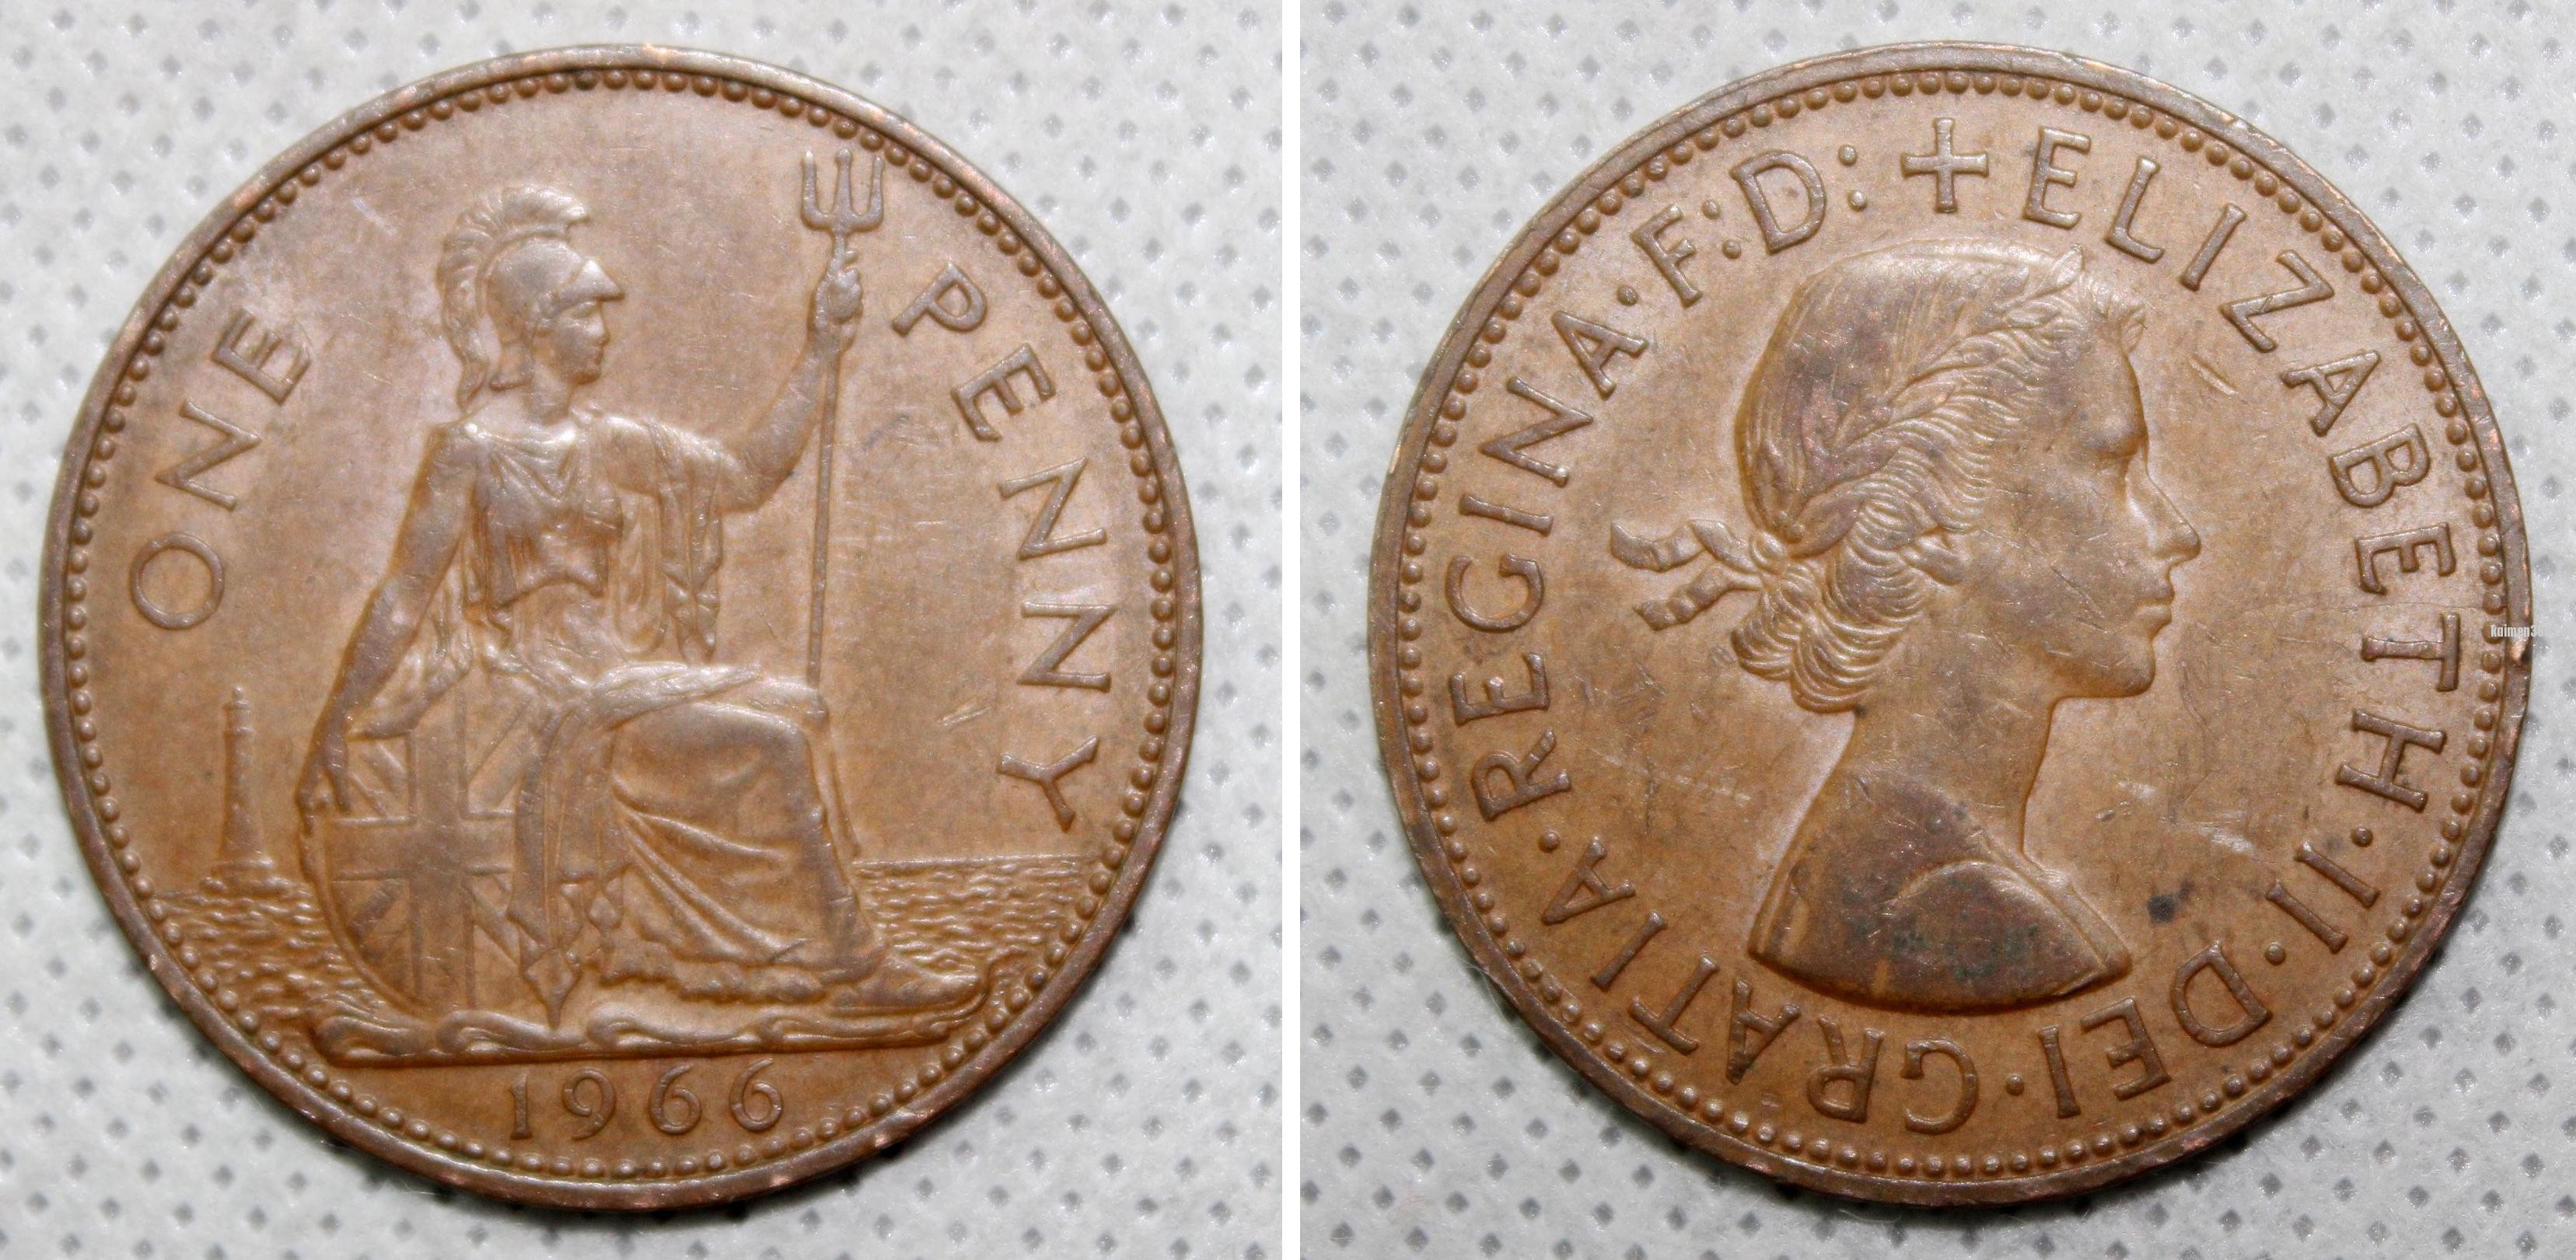 1966英国铜币.jpg